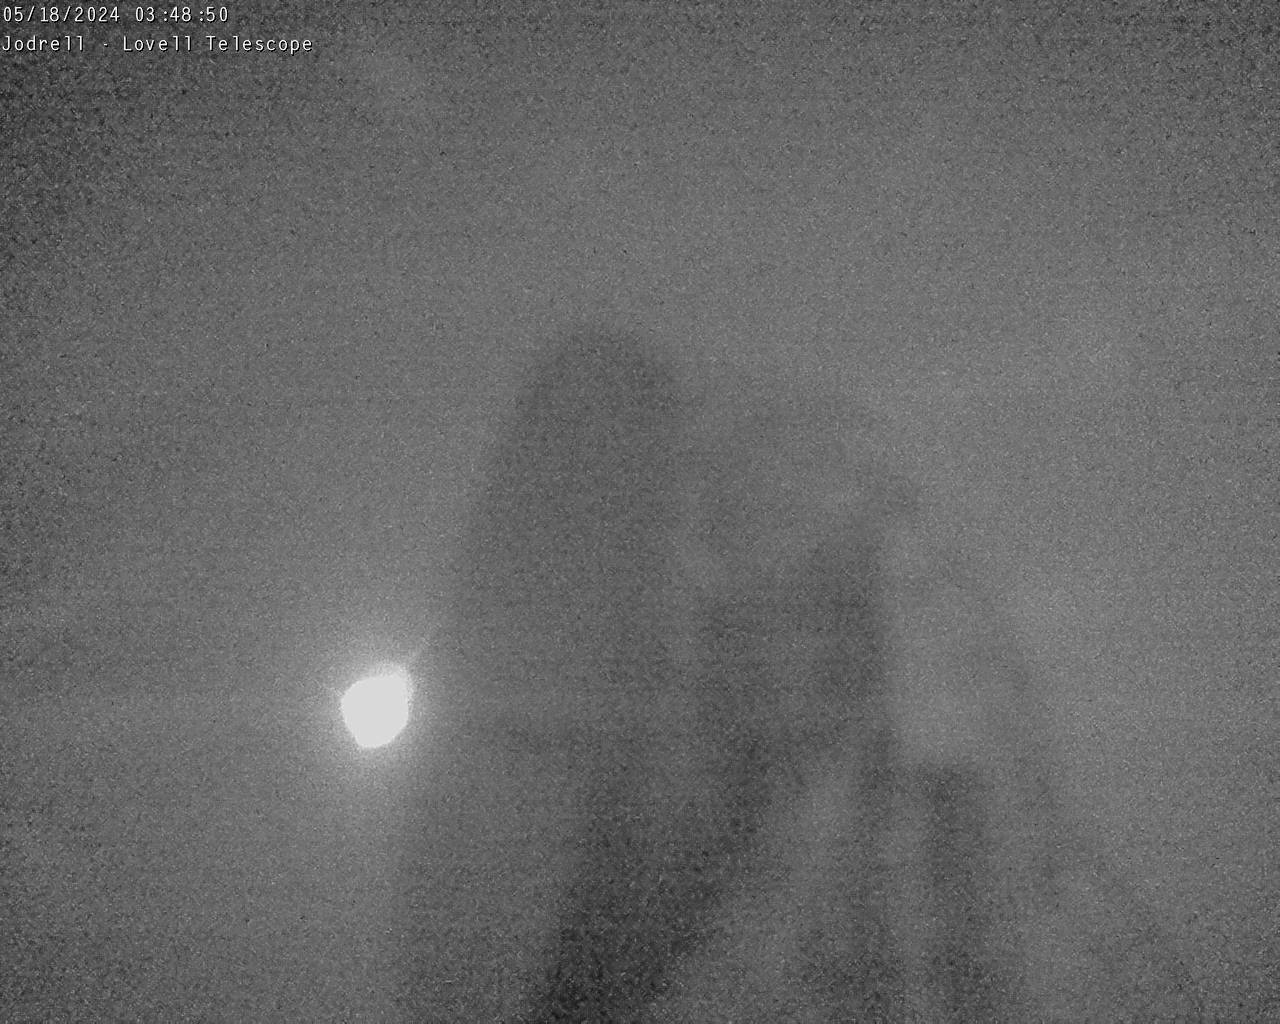 Observatoire de Jodrell Bank Sa. 03:49